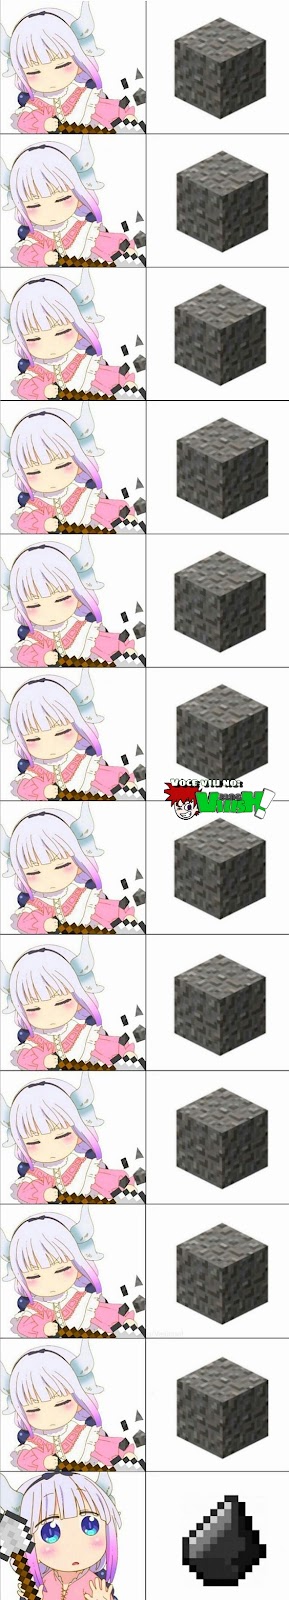 Meme mostrando repetidamente a menina cavando cascalho até achar silex no Minecraft